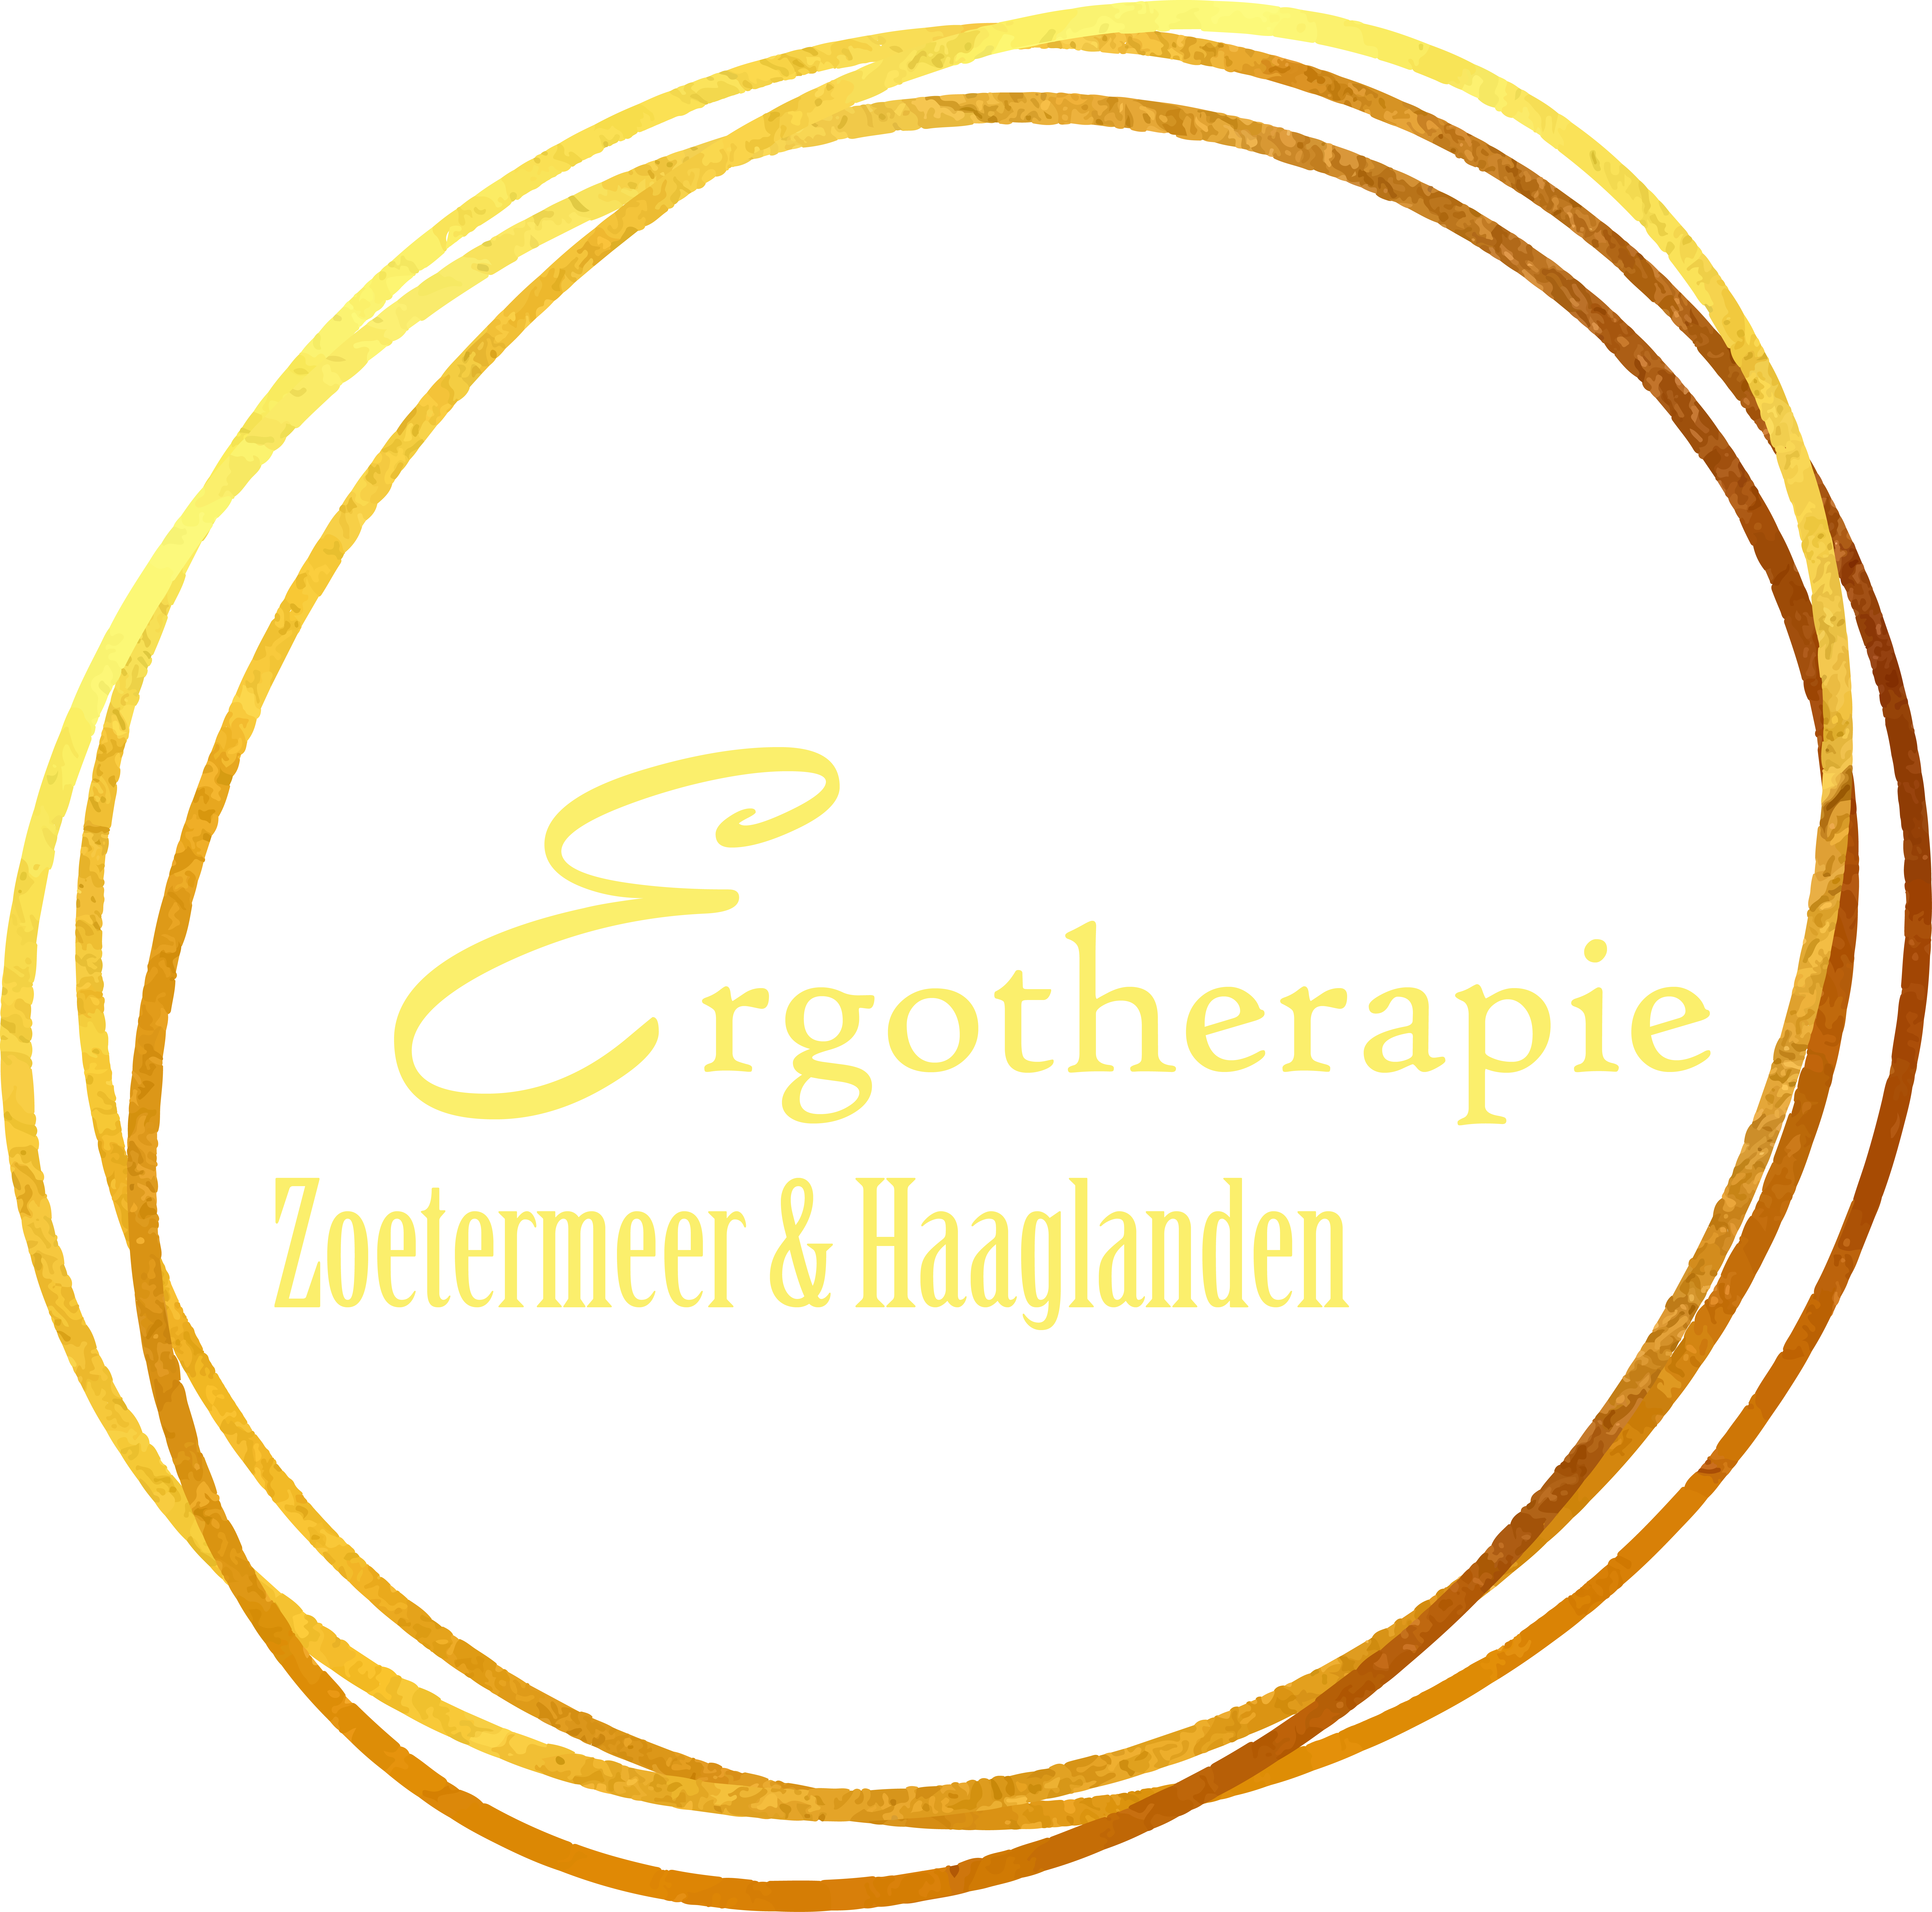 (c) Ergotherapiezoetermeer.nl